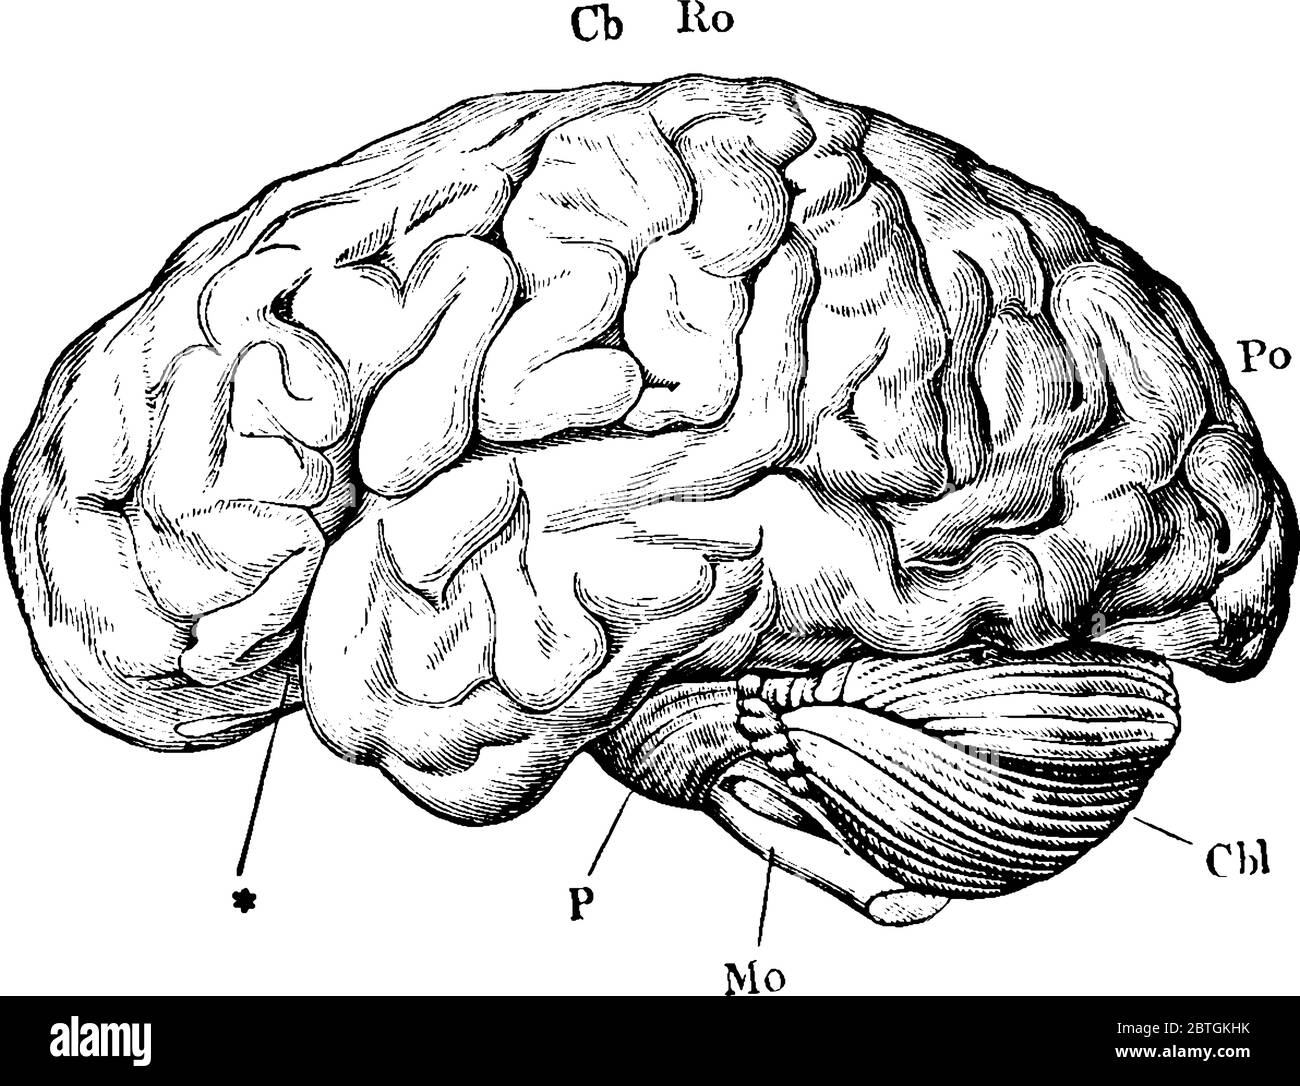 Mostrando il cervello dal lato sinistro, con le parti, emisferi cerebrali, cervelletto, medulla oblonata, i pons Varolii, la fessura di Sylvius, t Illustrazione Vettoriale